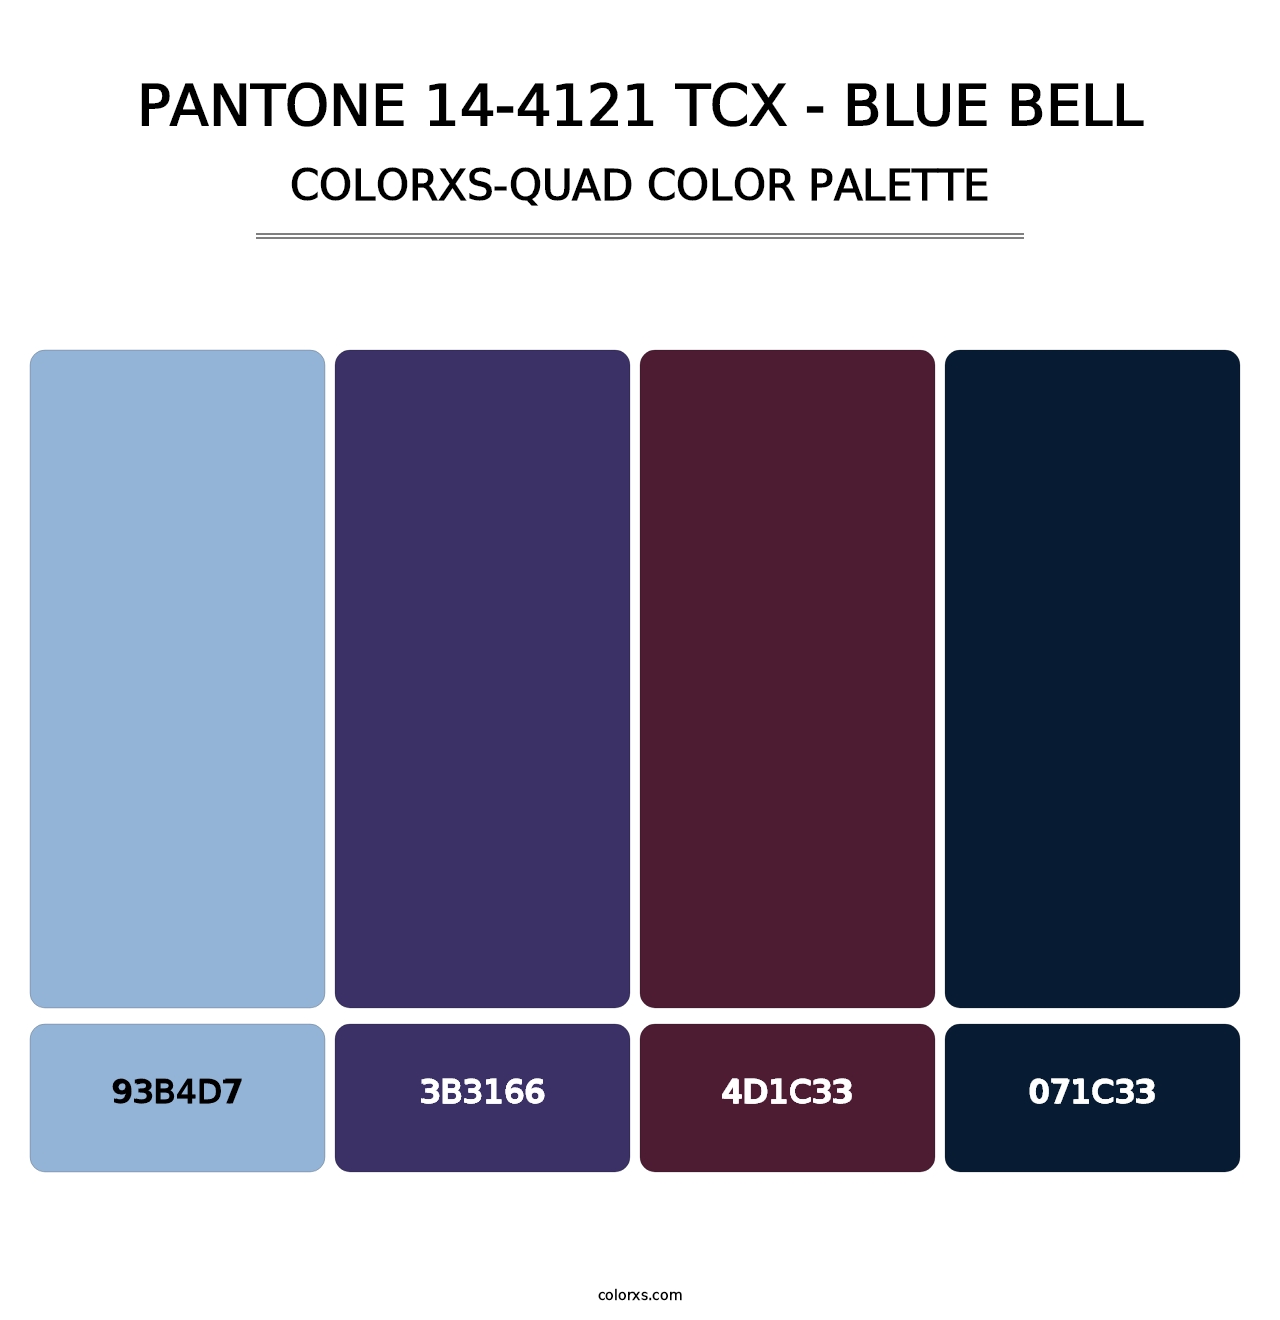 PANTONE 14-4121 TCX - Blue Bell - Colorxs Quad Palette